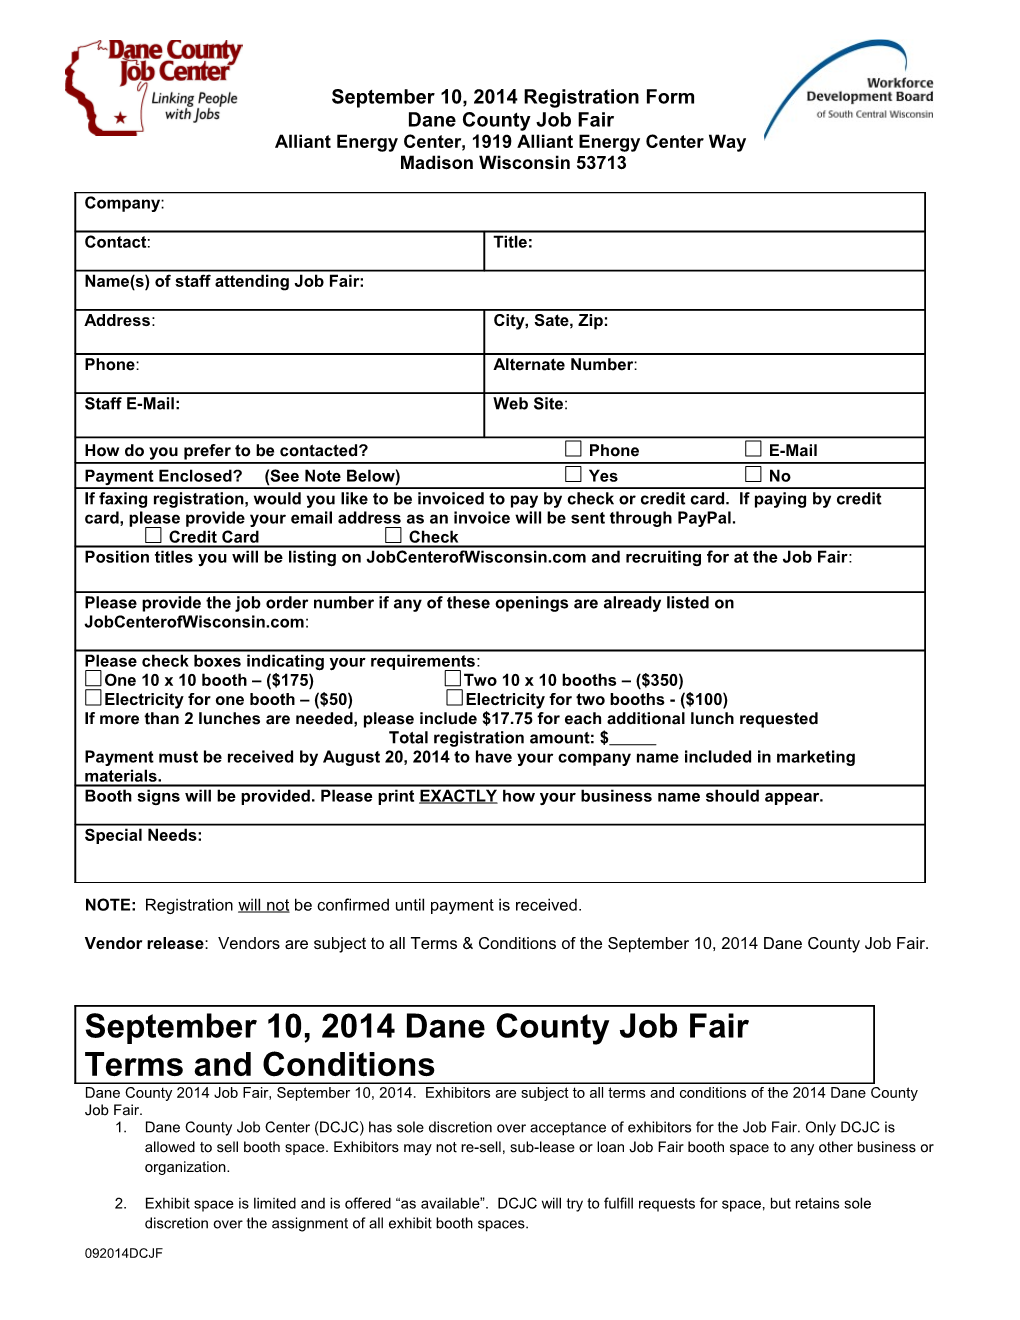 Dane County Job Center Event Registration Form